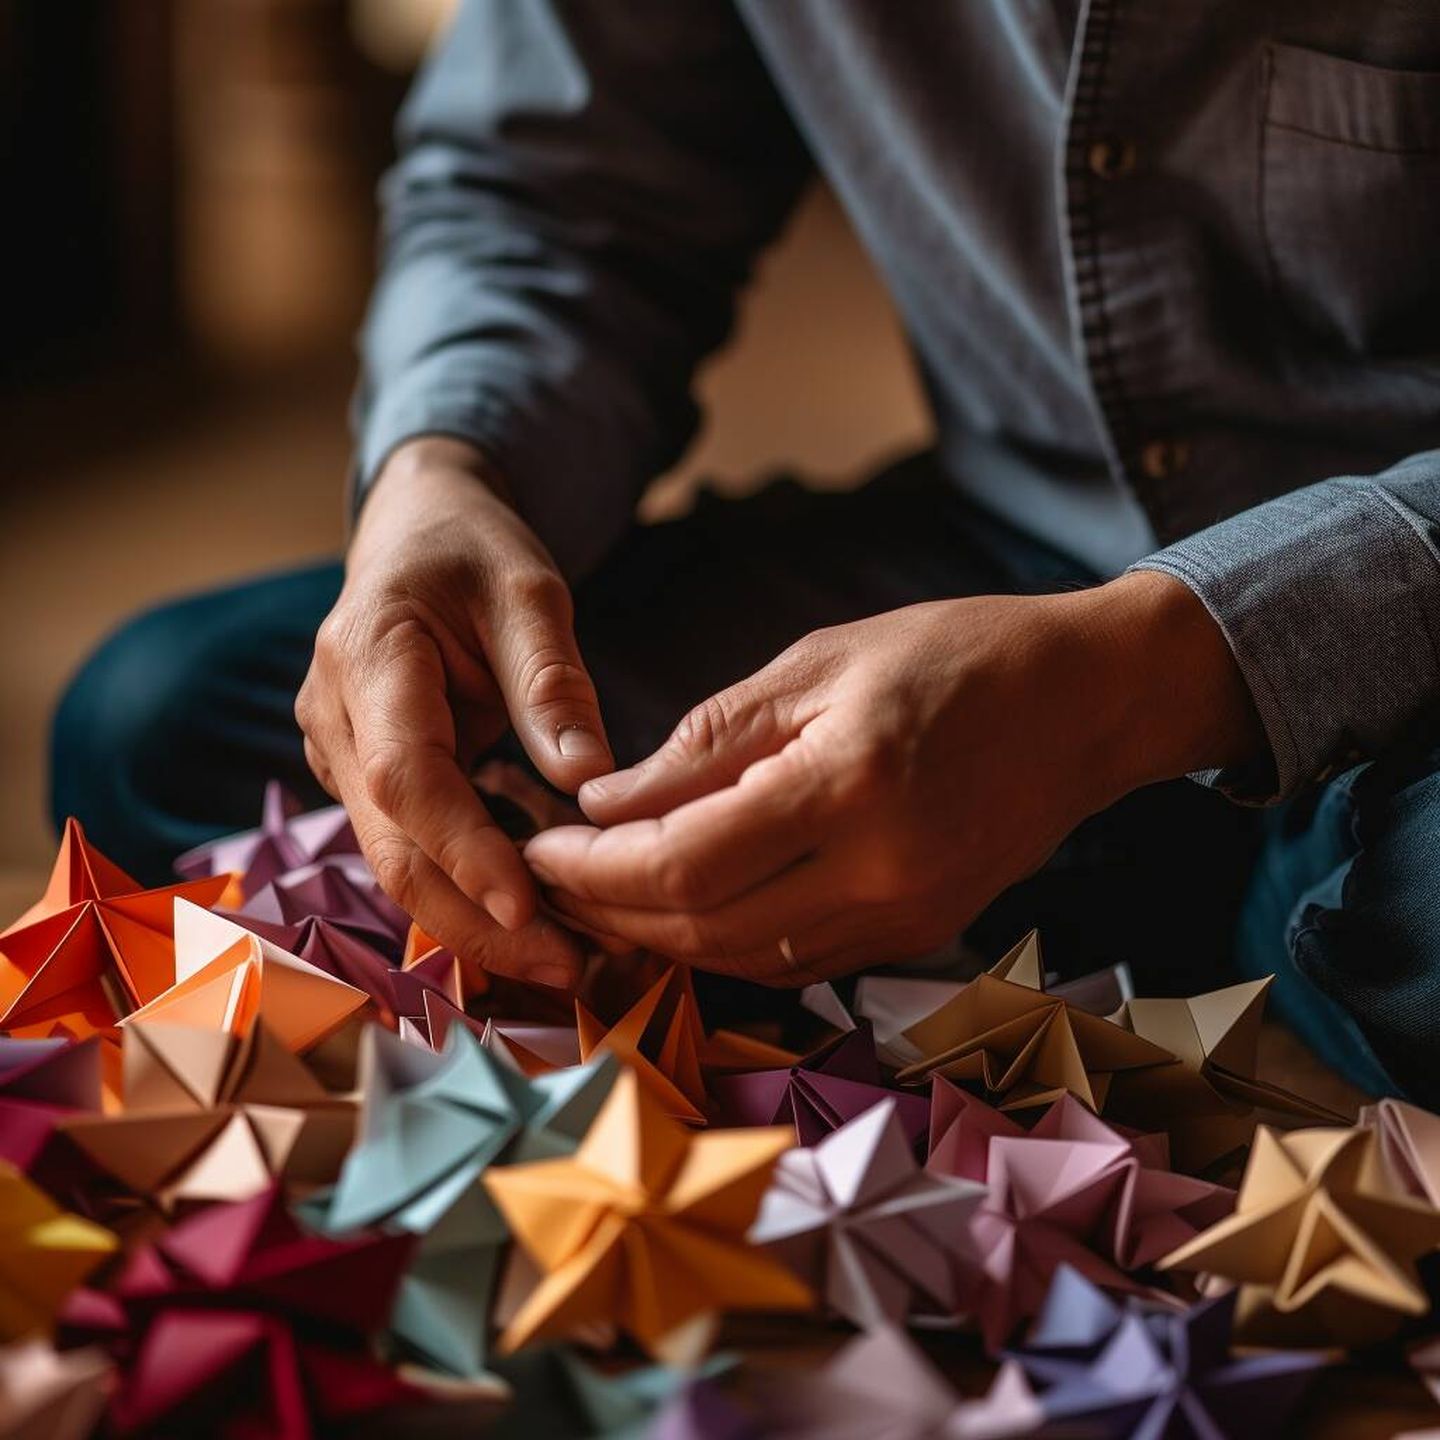 La Fundación Cajasol propone originales talleres de origami con temáticas como motivos navideños. (Cortesía)